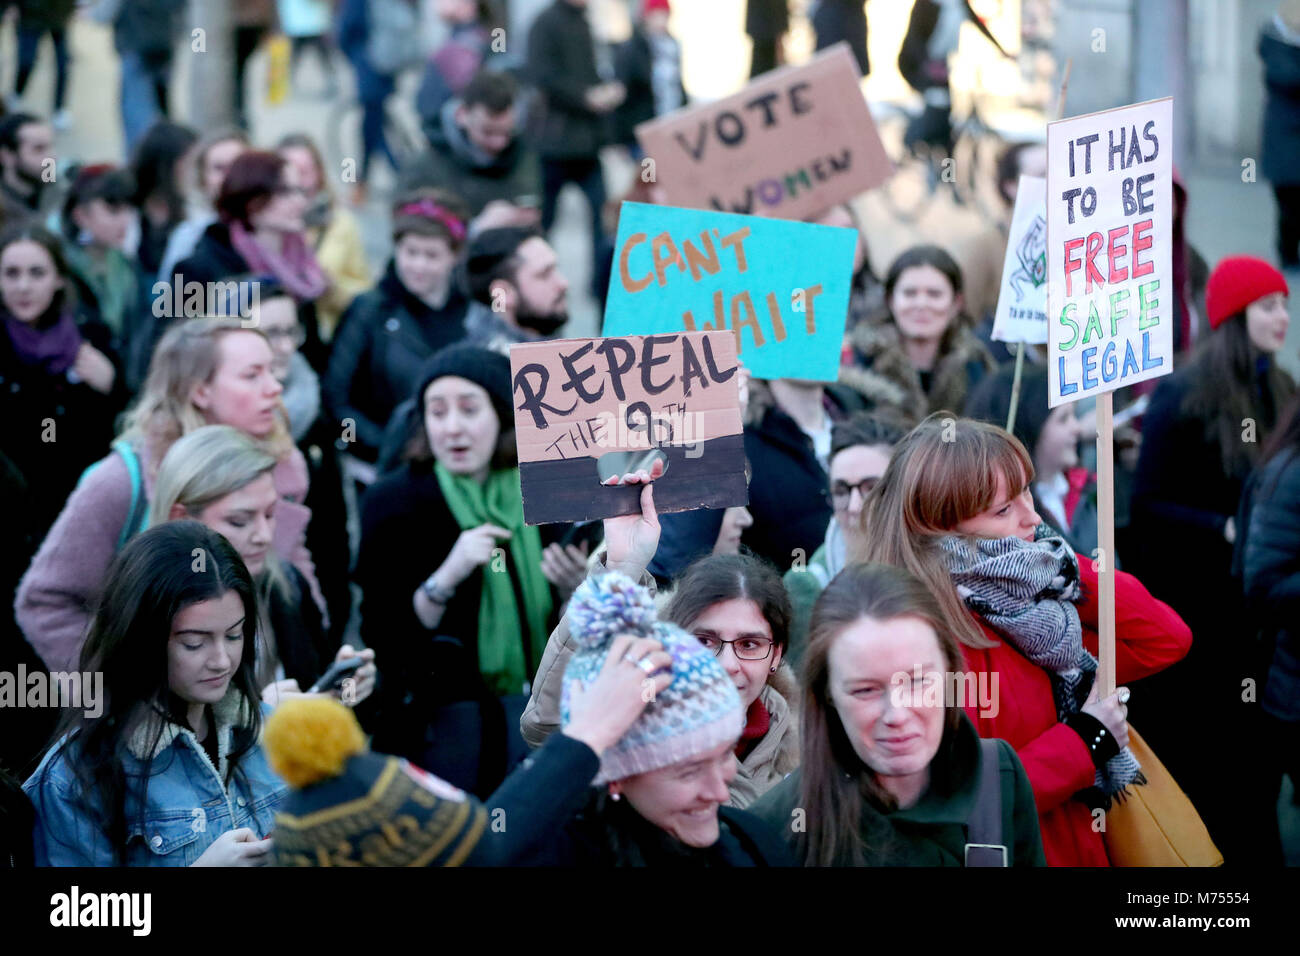 Menschen, die verschiedenen Zeichen, als Teilnehmer an einem Marsch durch das Stadtzentrum von Dublin fordert die Aufhebung der 8. Änderung der irischen Verfassung. Stockfoto